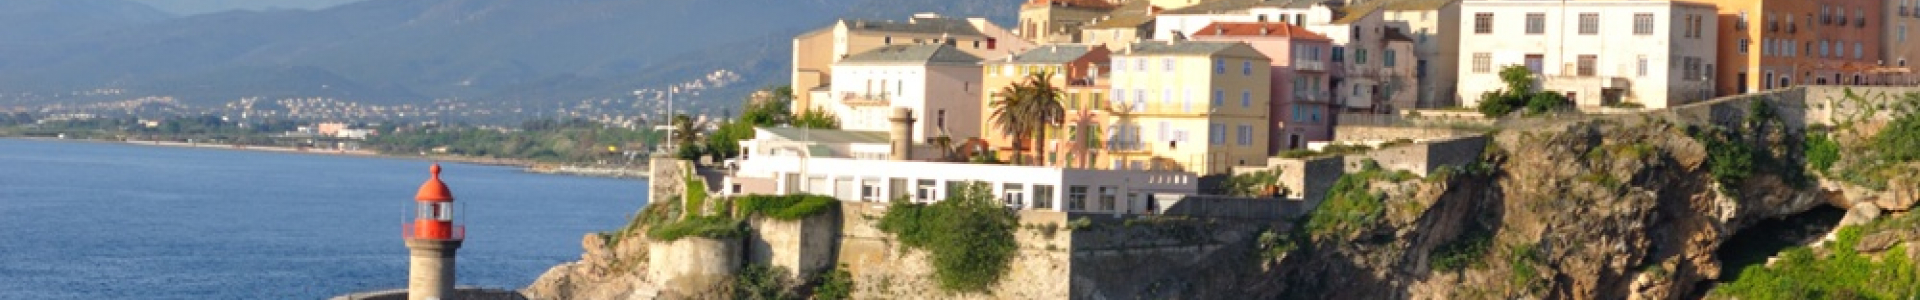 Weekendesk : week-end en Corse en hôtels 3*